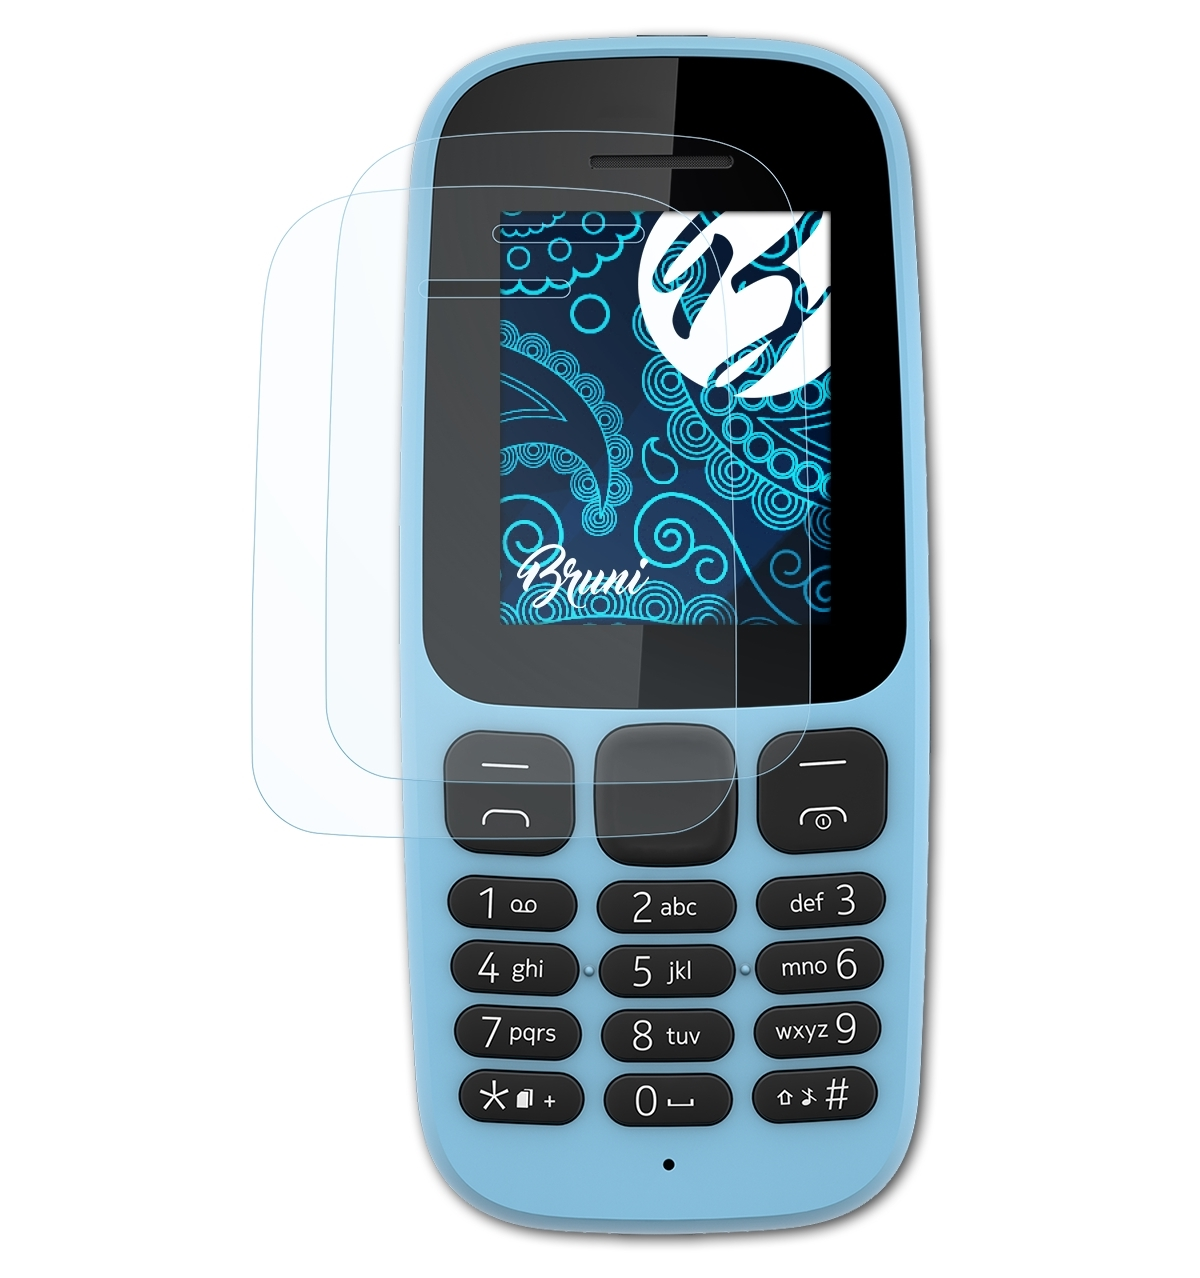 2x Basics-Clear Schutzfolie(für BRUNI (2017)) Nokia 105